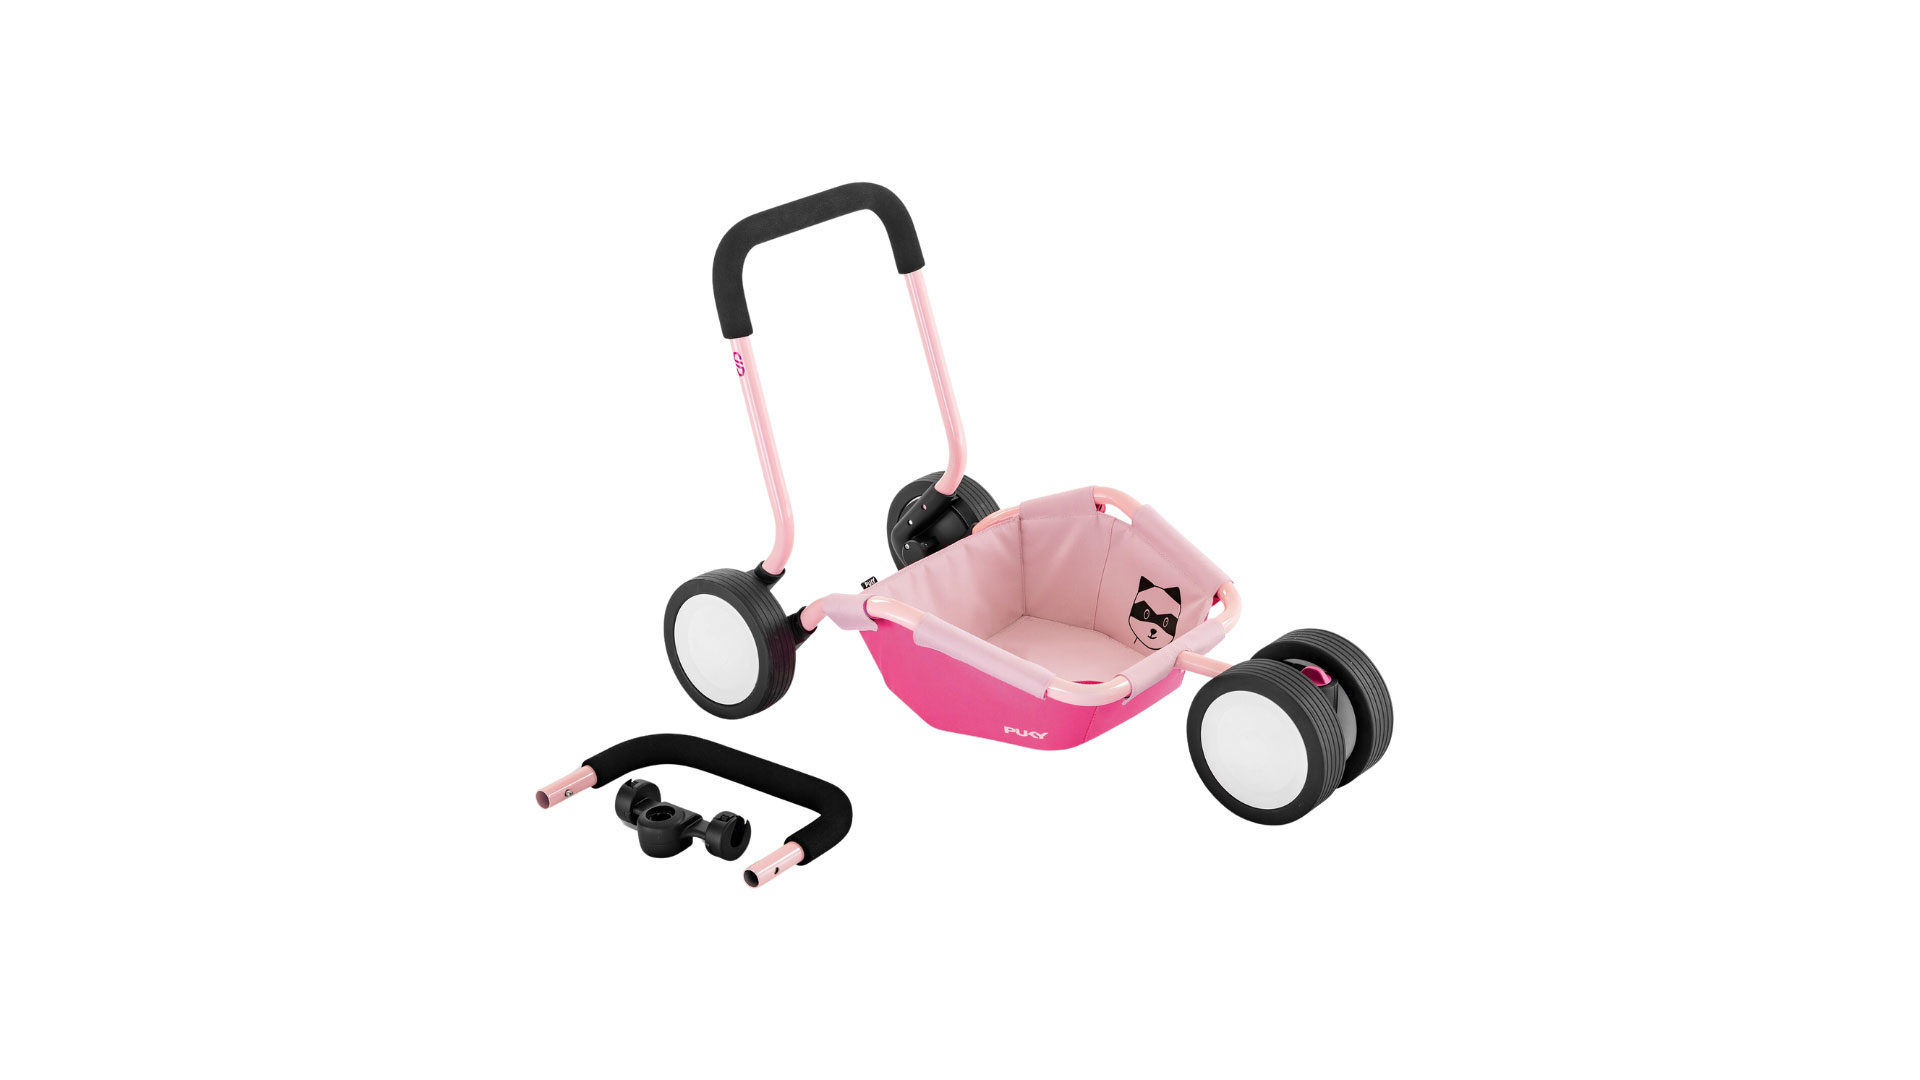 Spielzeug / Spielgerät Puky aus Kunststoff Metall in Pink PUKY TRAILY Lauflernwagen bzw. Anhänger Rose-Pink, ab ca. 10 Monaten